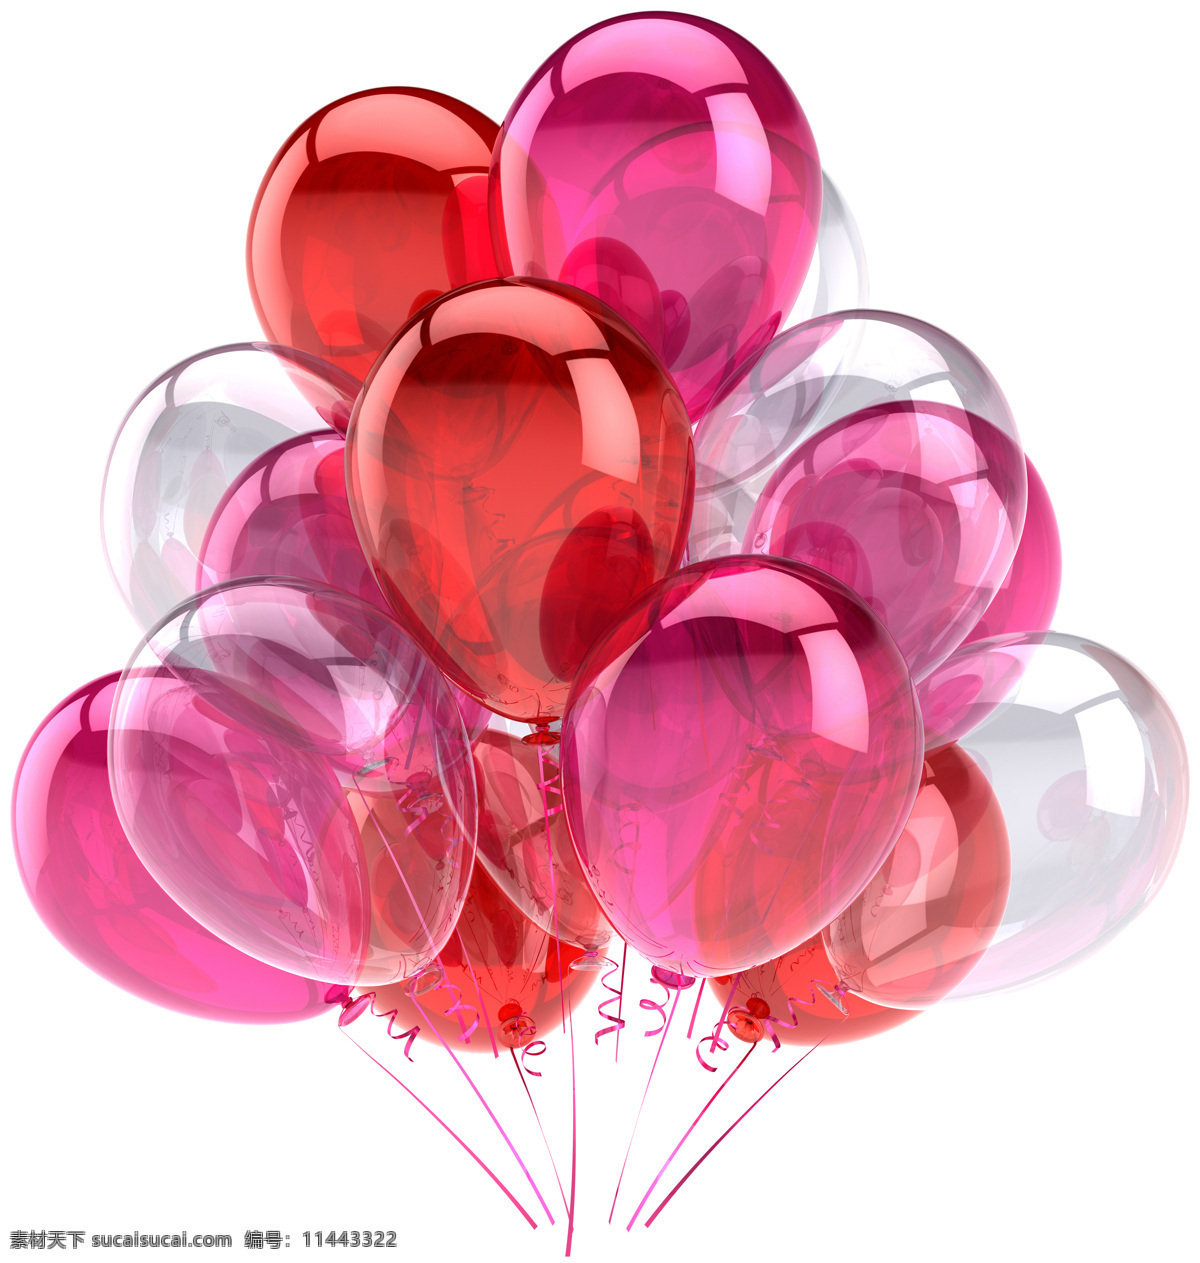 彩色气球高清 彩色气球 气球 彩球 节日气球 节日彩球 节日素材 节日庆祝 3d设计 其他类别 生活百科 白色